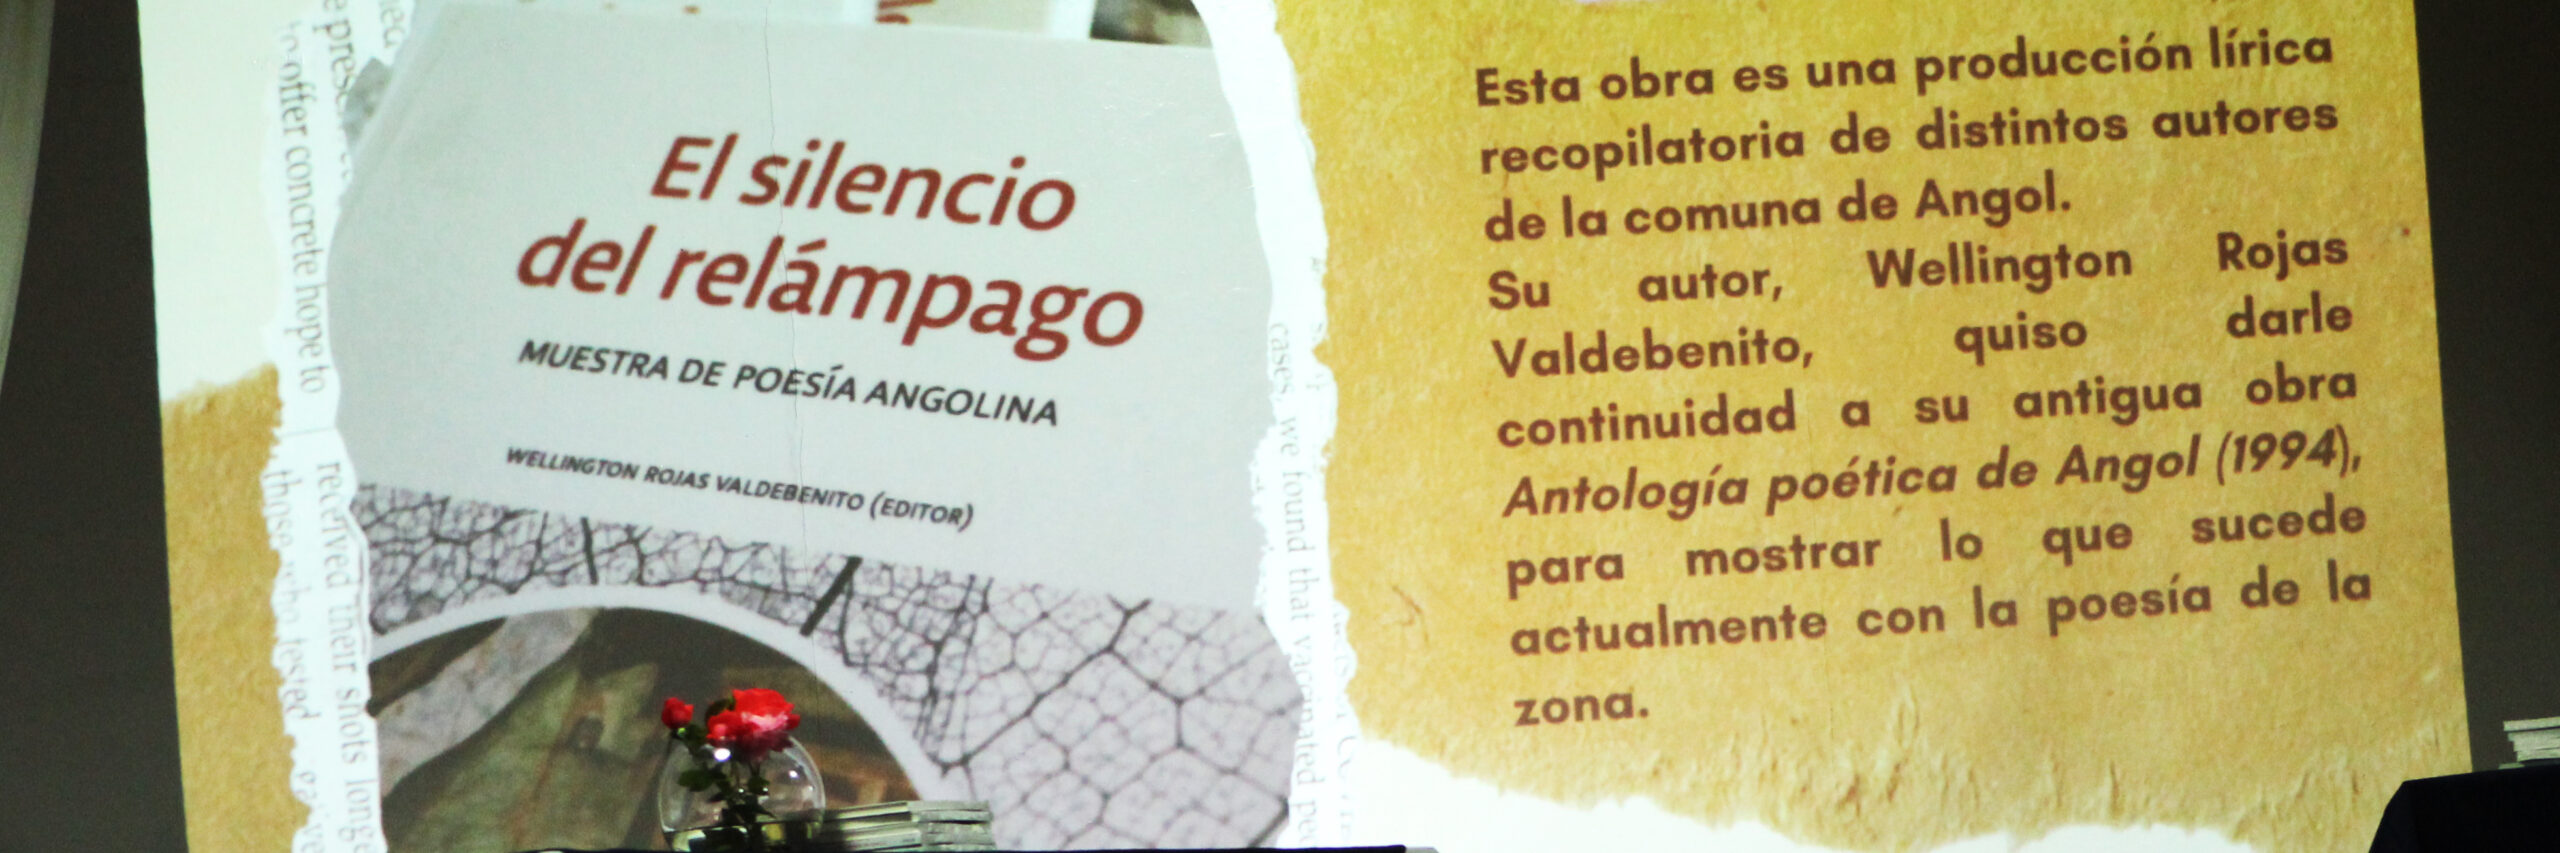 Libro “El silencio del relámpago. Muestra de poesía angolina” fue presentado con tertulia literaria en UFRO campus Angol.